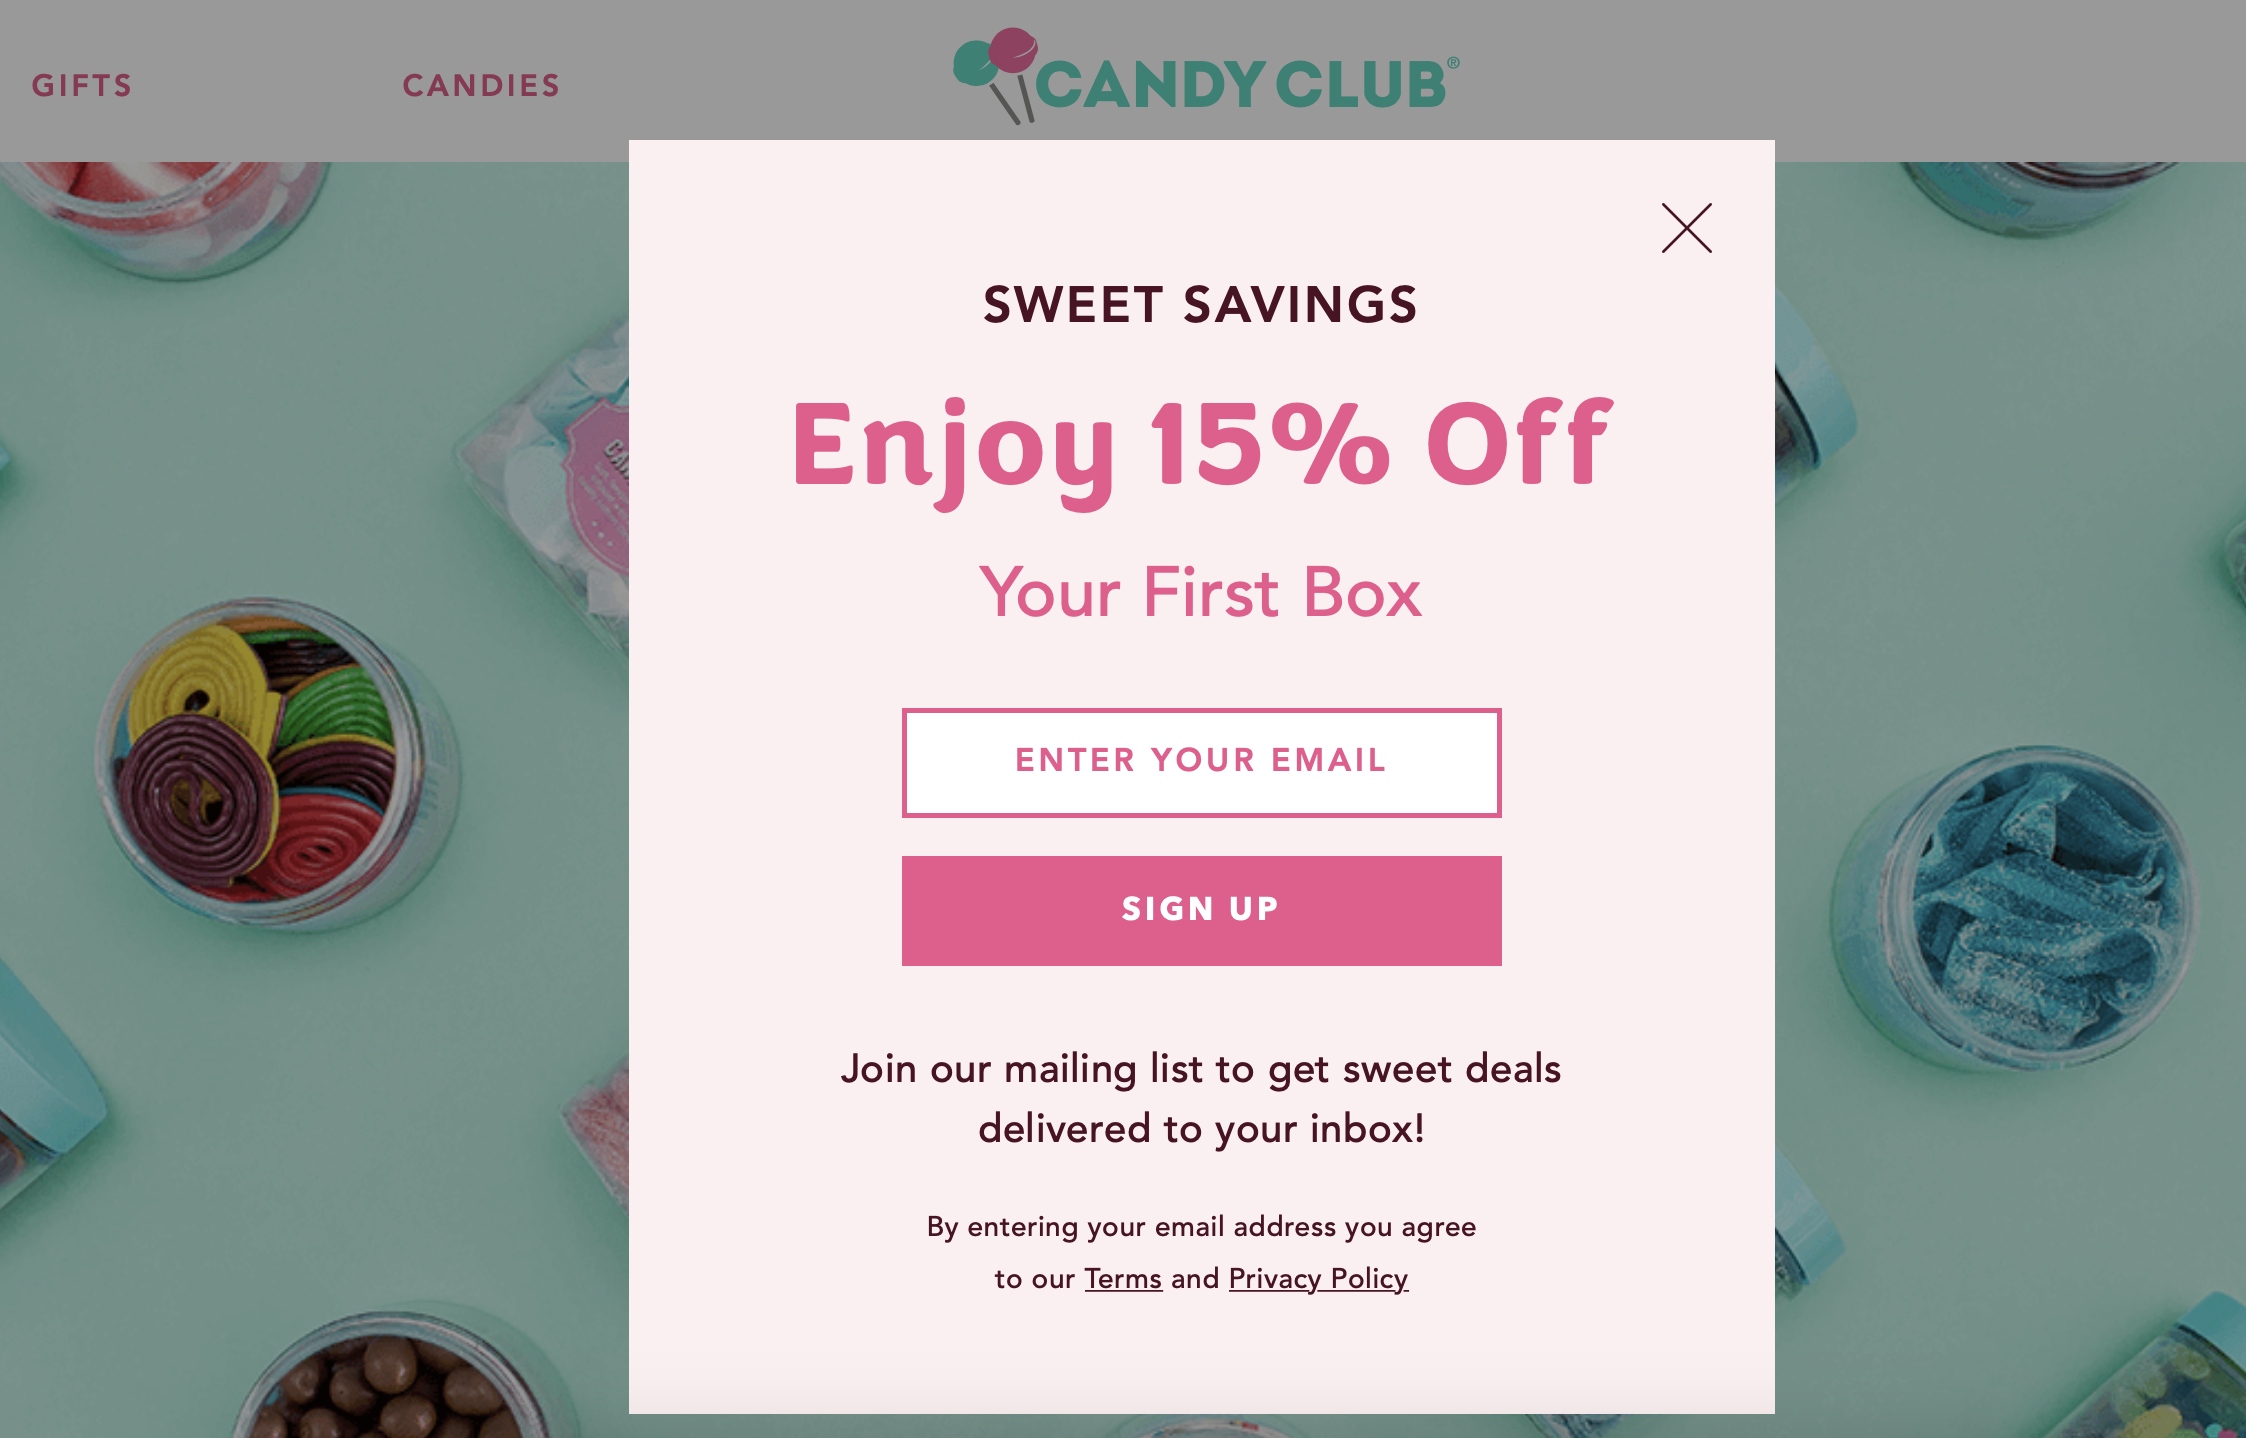 O Candy Club torna os visitantes do seu site em leads usando um cupom de desconto de boas-vindas